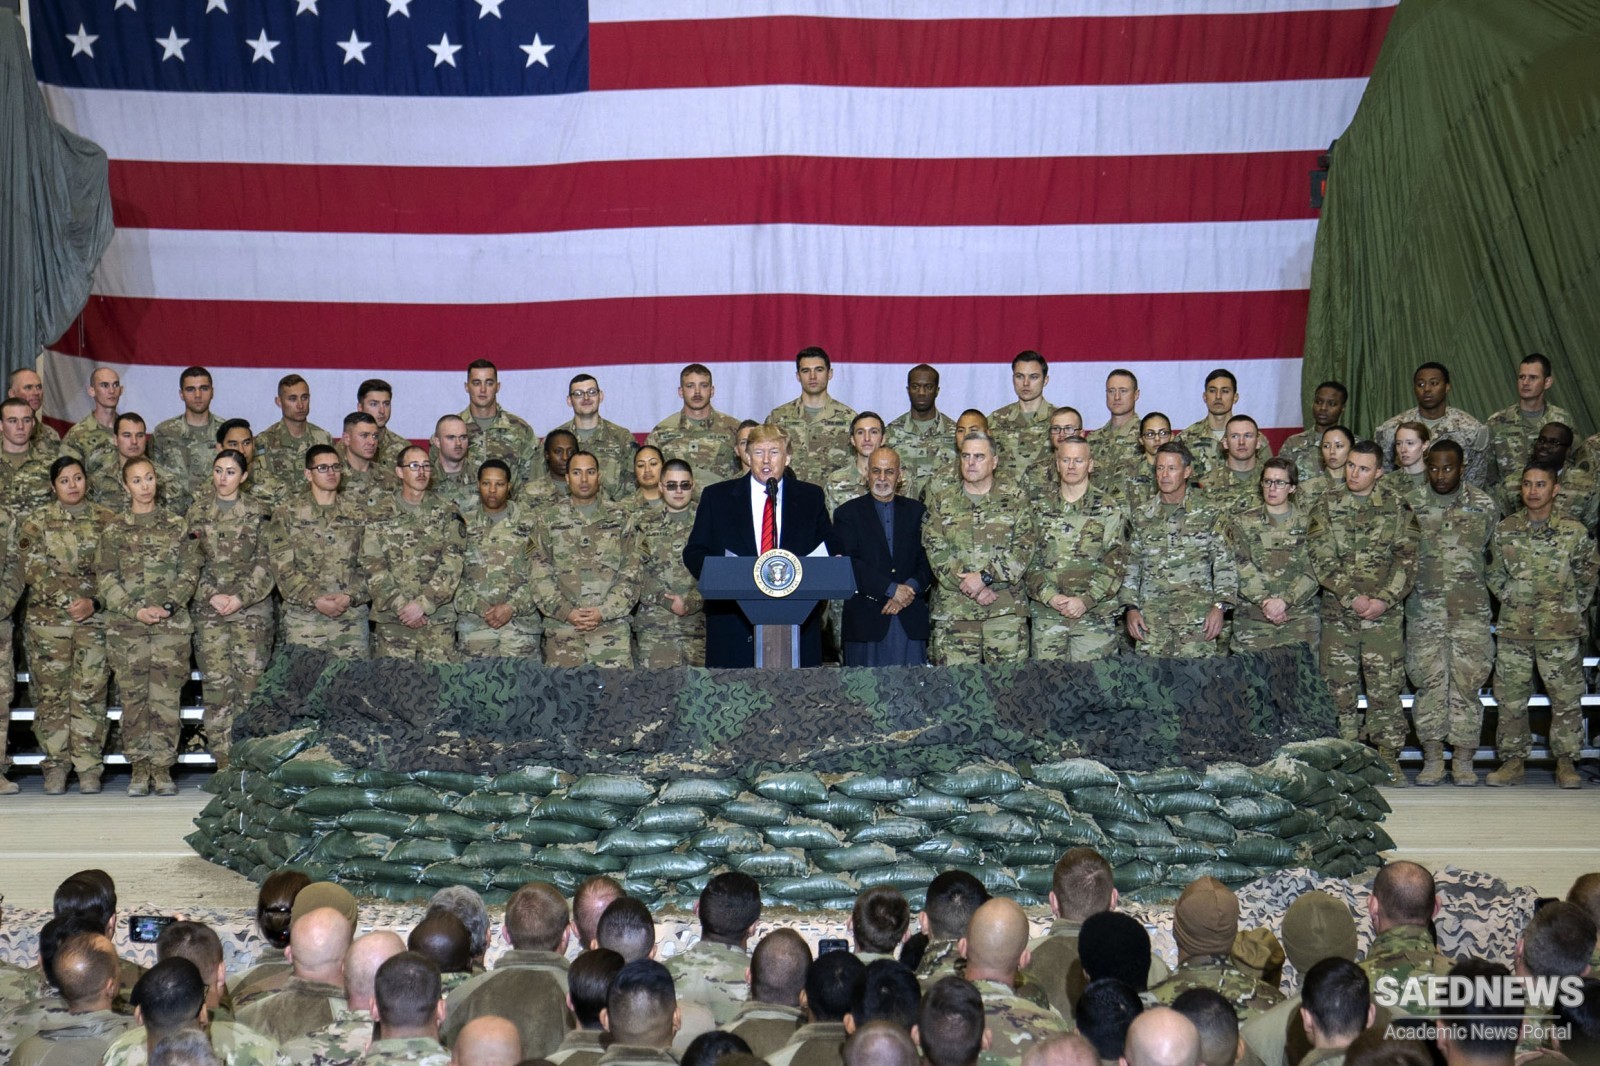 अफगानिस्तान में तैनात आधे सैनिक को अमेरिकी सरकार ने घर वापस बुलाने का फैसला किया है